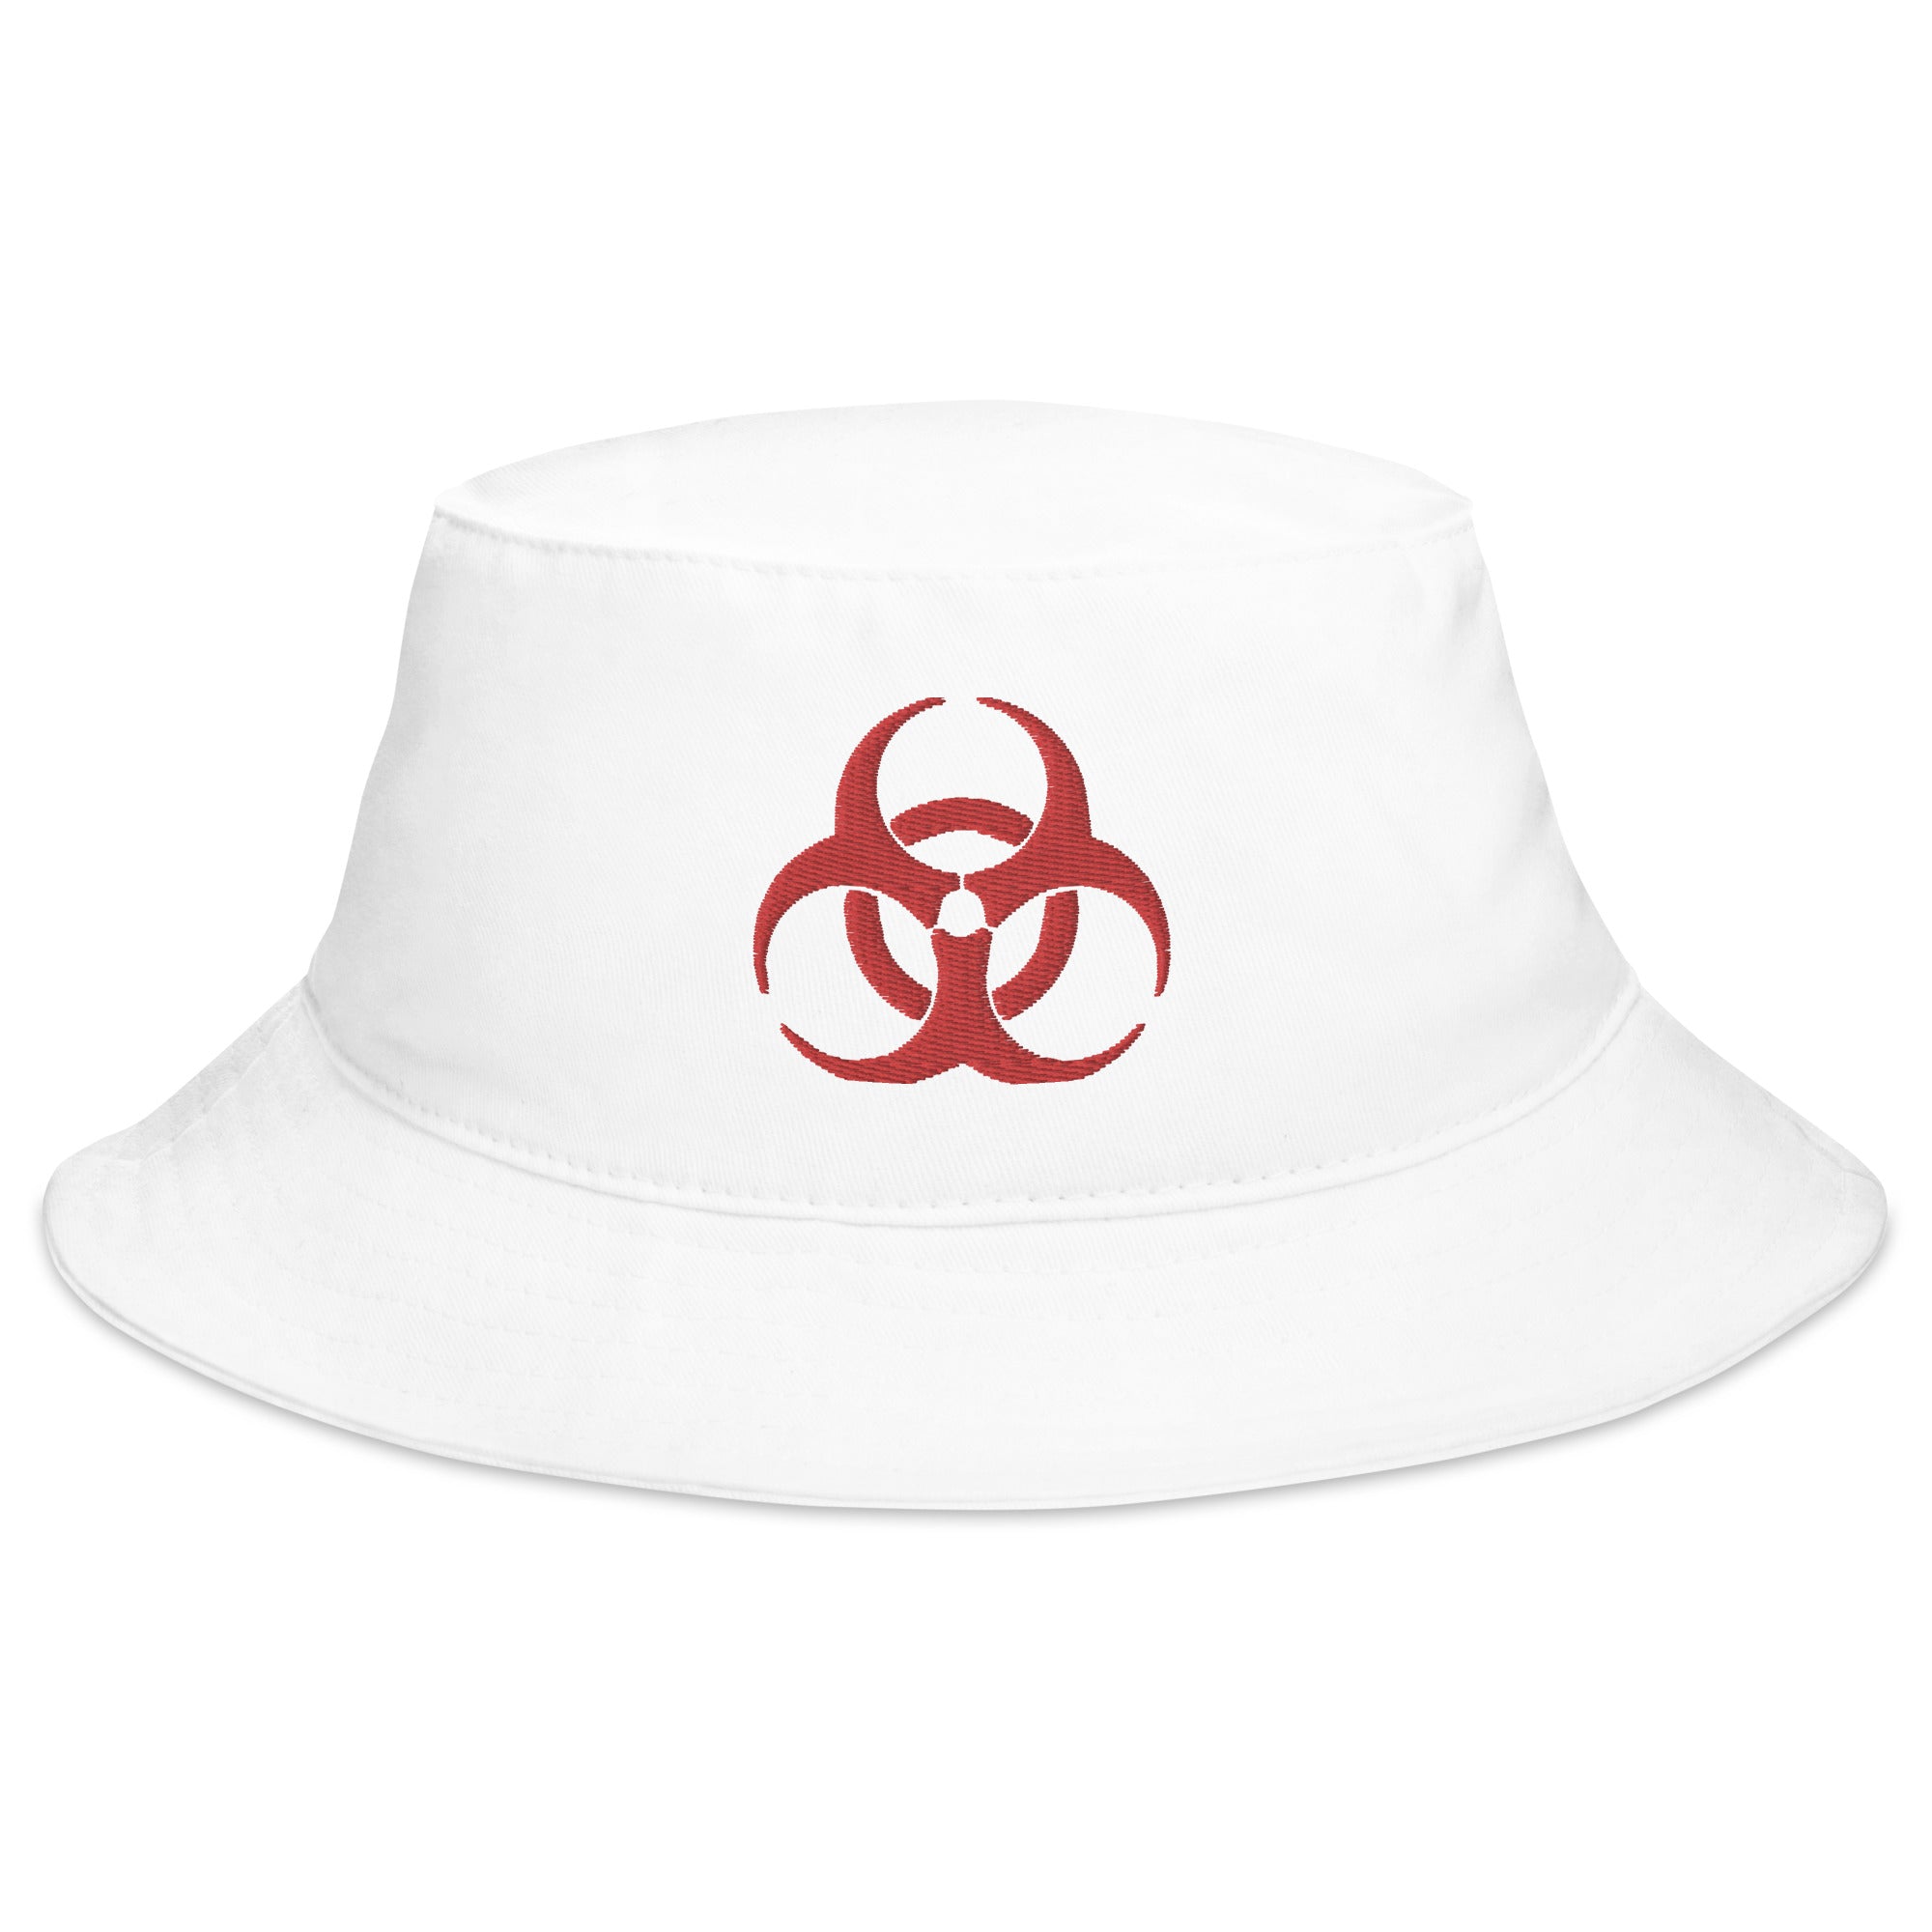 Red Bio Hazard Symbol Warning Sign Embroidered Bucket Hat